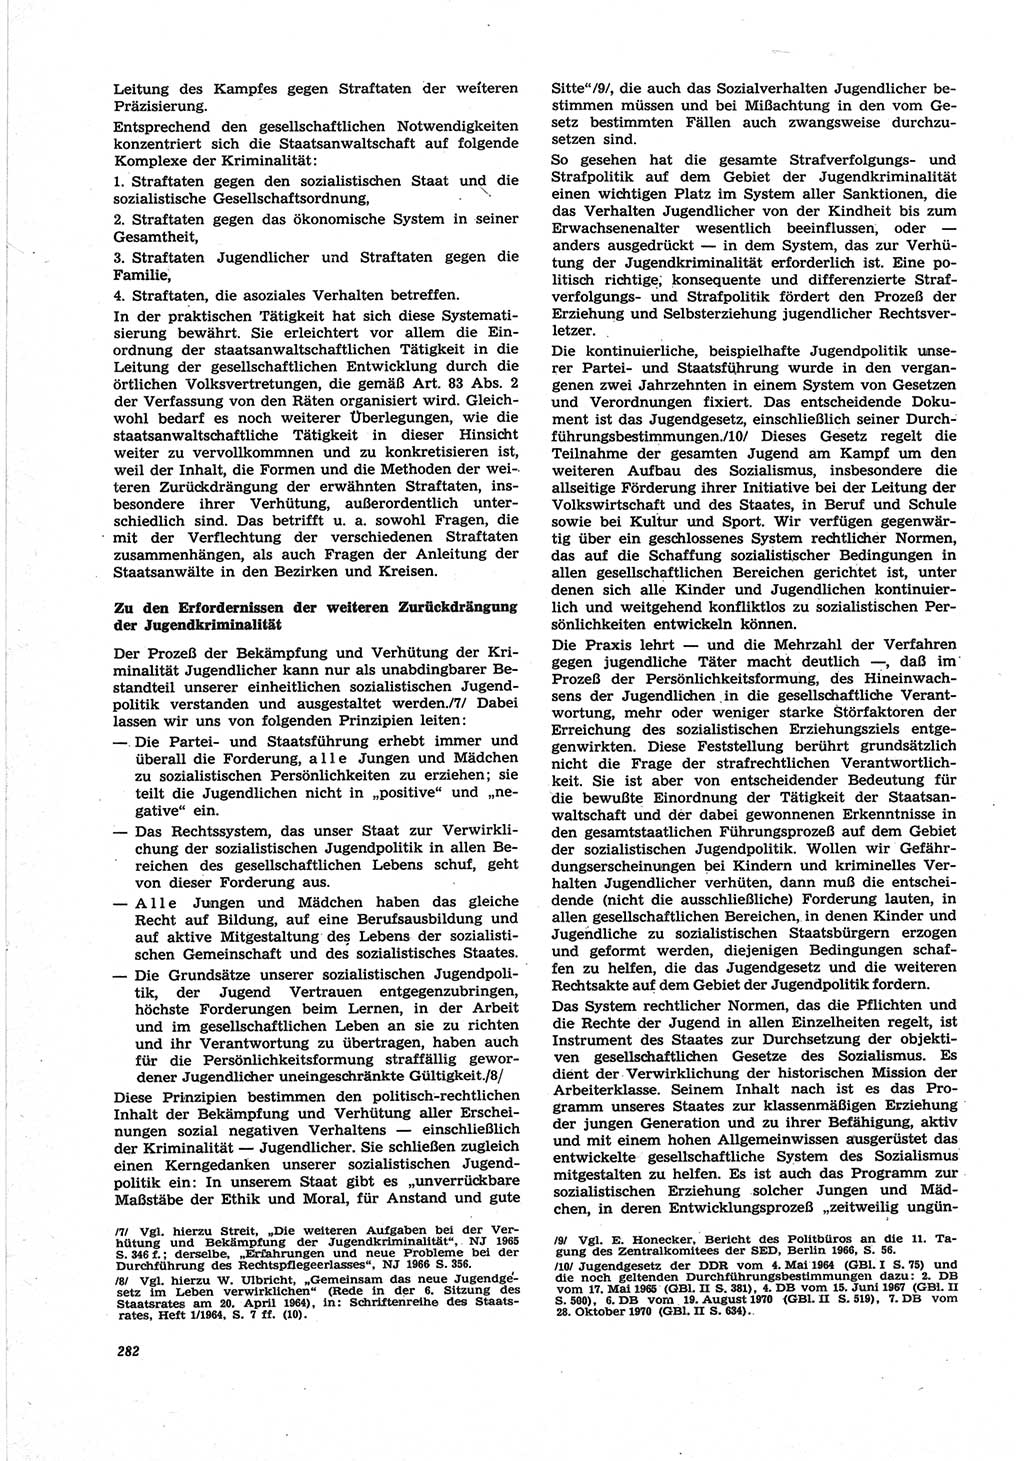 Neue Justiz (NJ), Zeitschrift für Recht und Rechtswissenschaft [Deutsche Demokratische Republik (DDR)], 25. Jahrgang 1971, Seite 282 (NJ DDR 1971, S. 282)